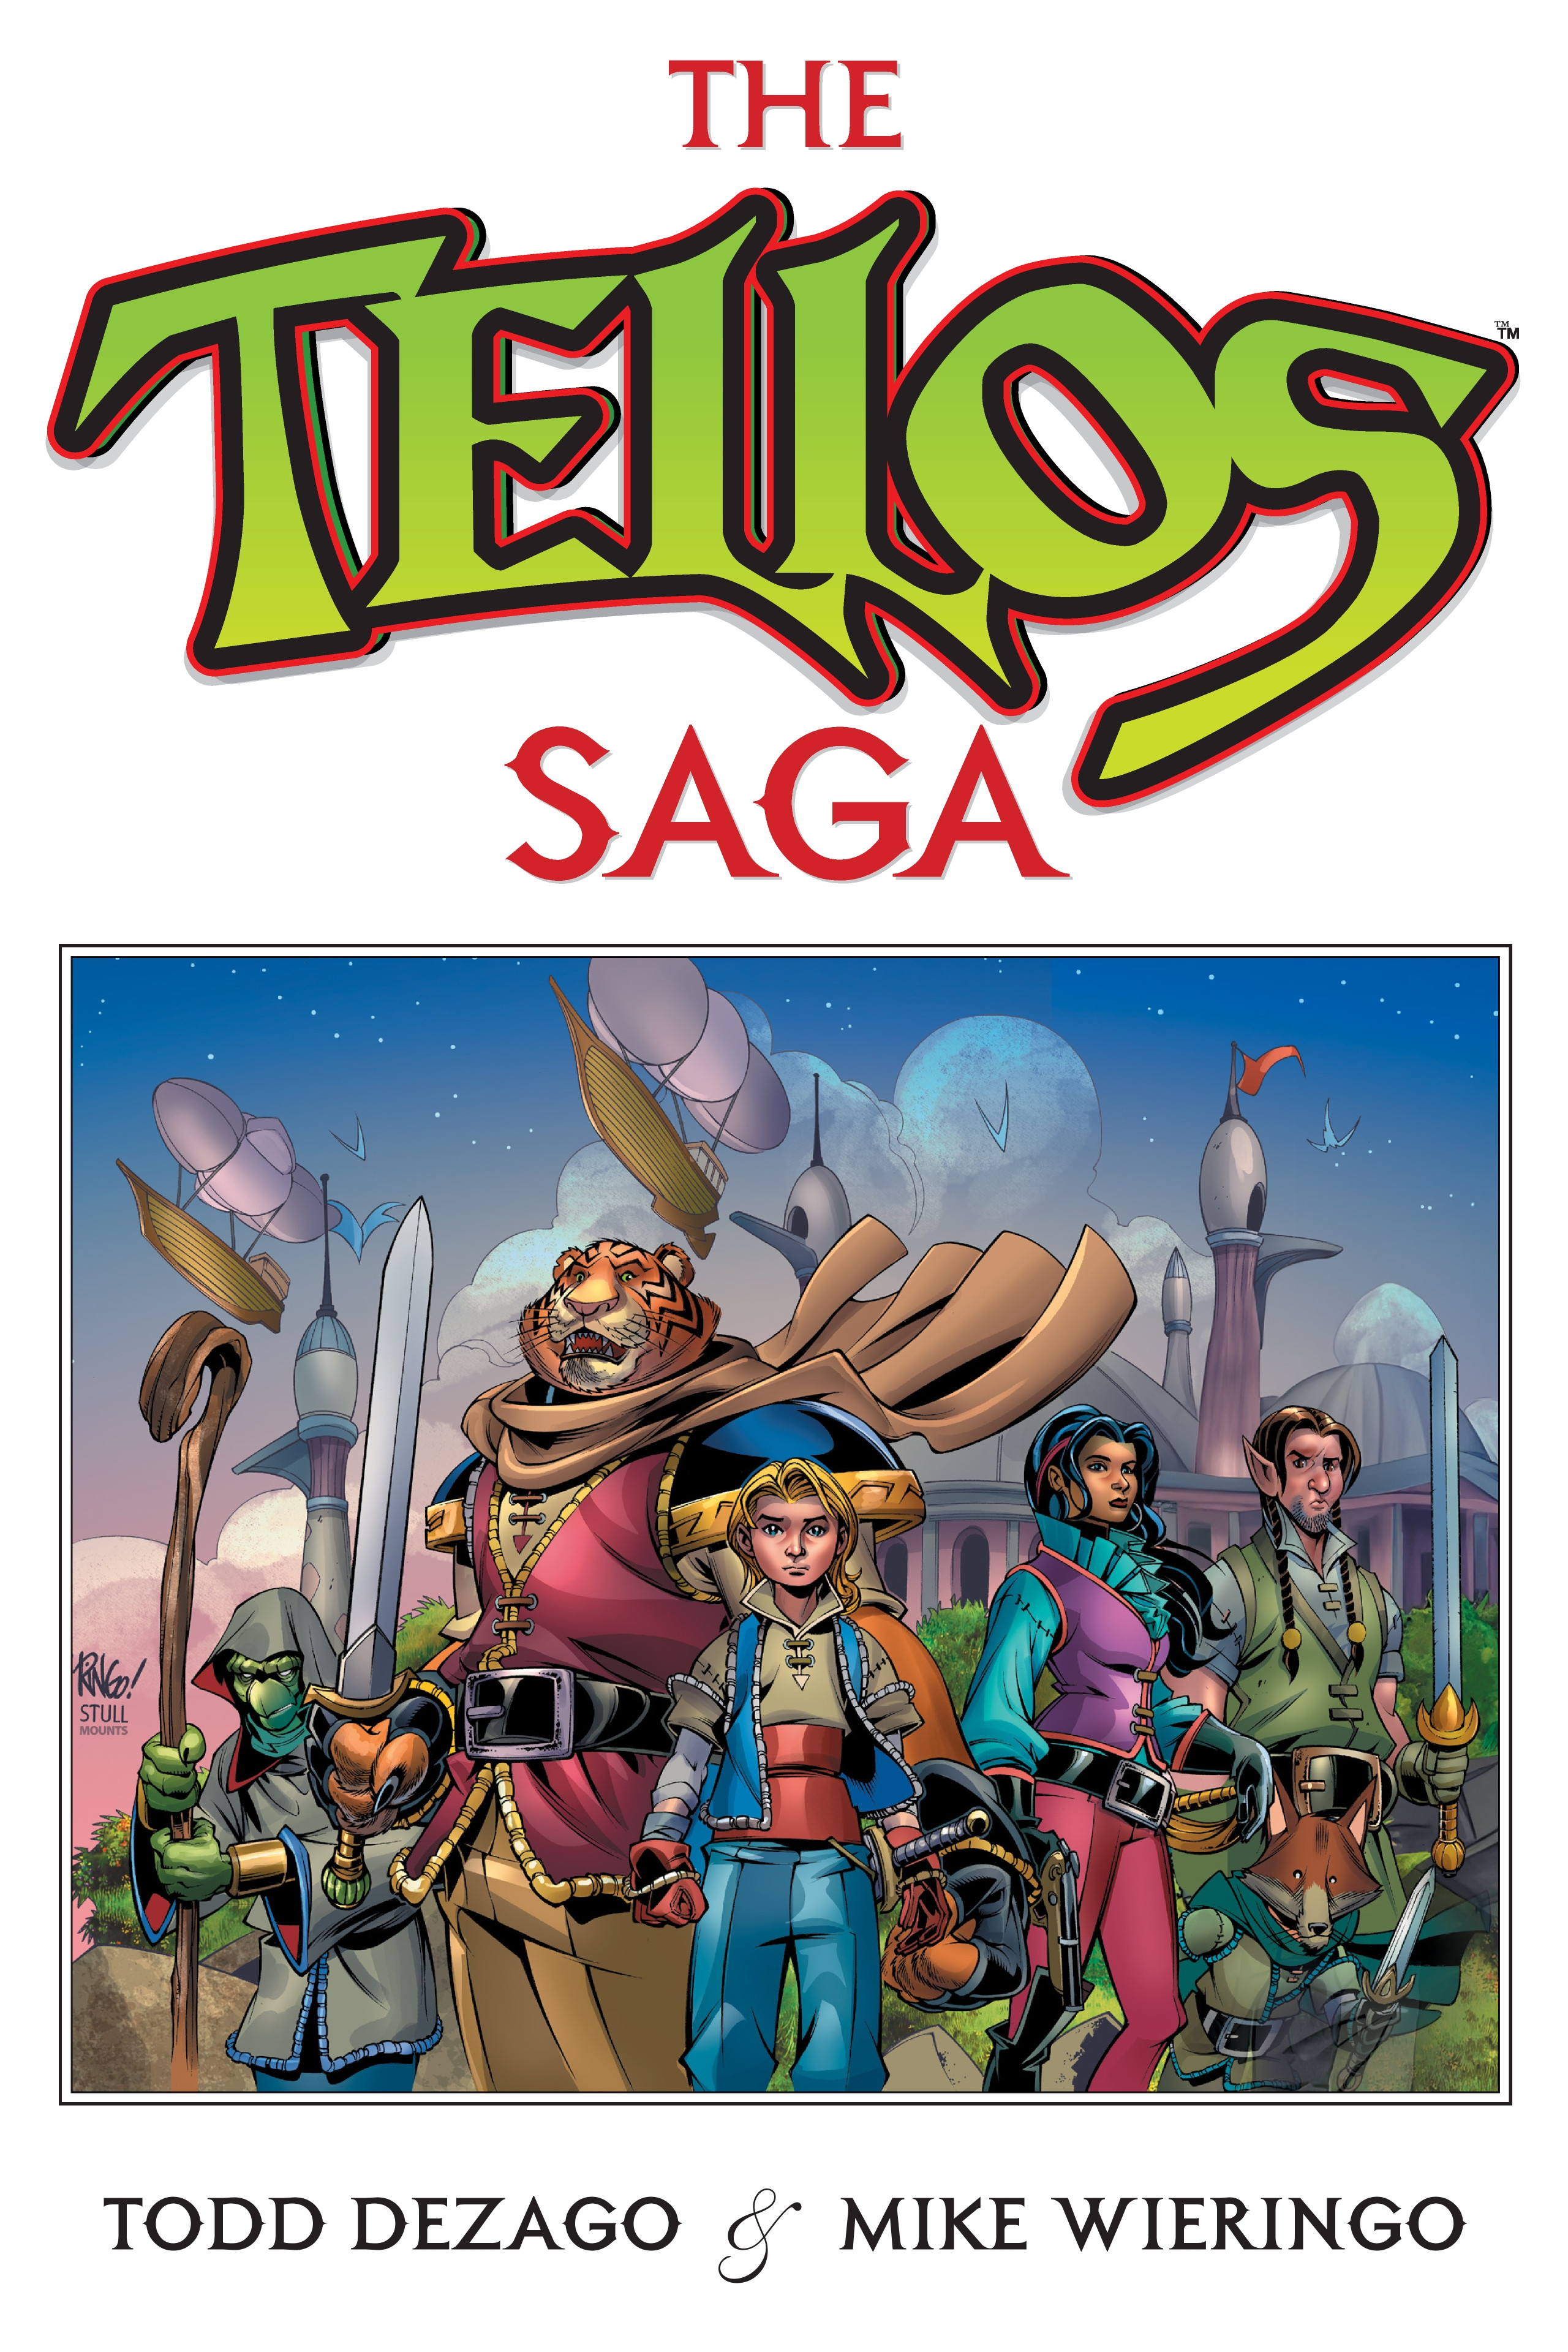 Read online The Tellos Saga comic -  Issue # TPB (Part 1) - 1